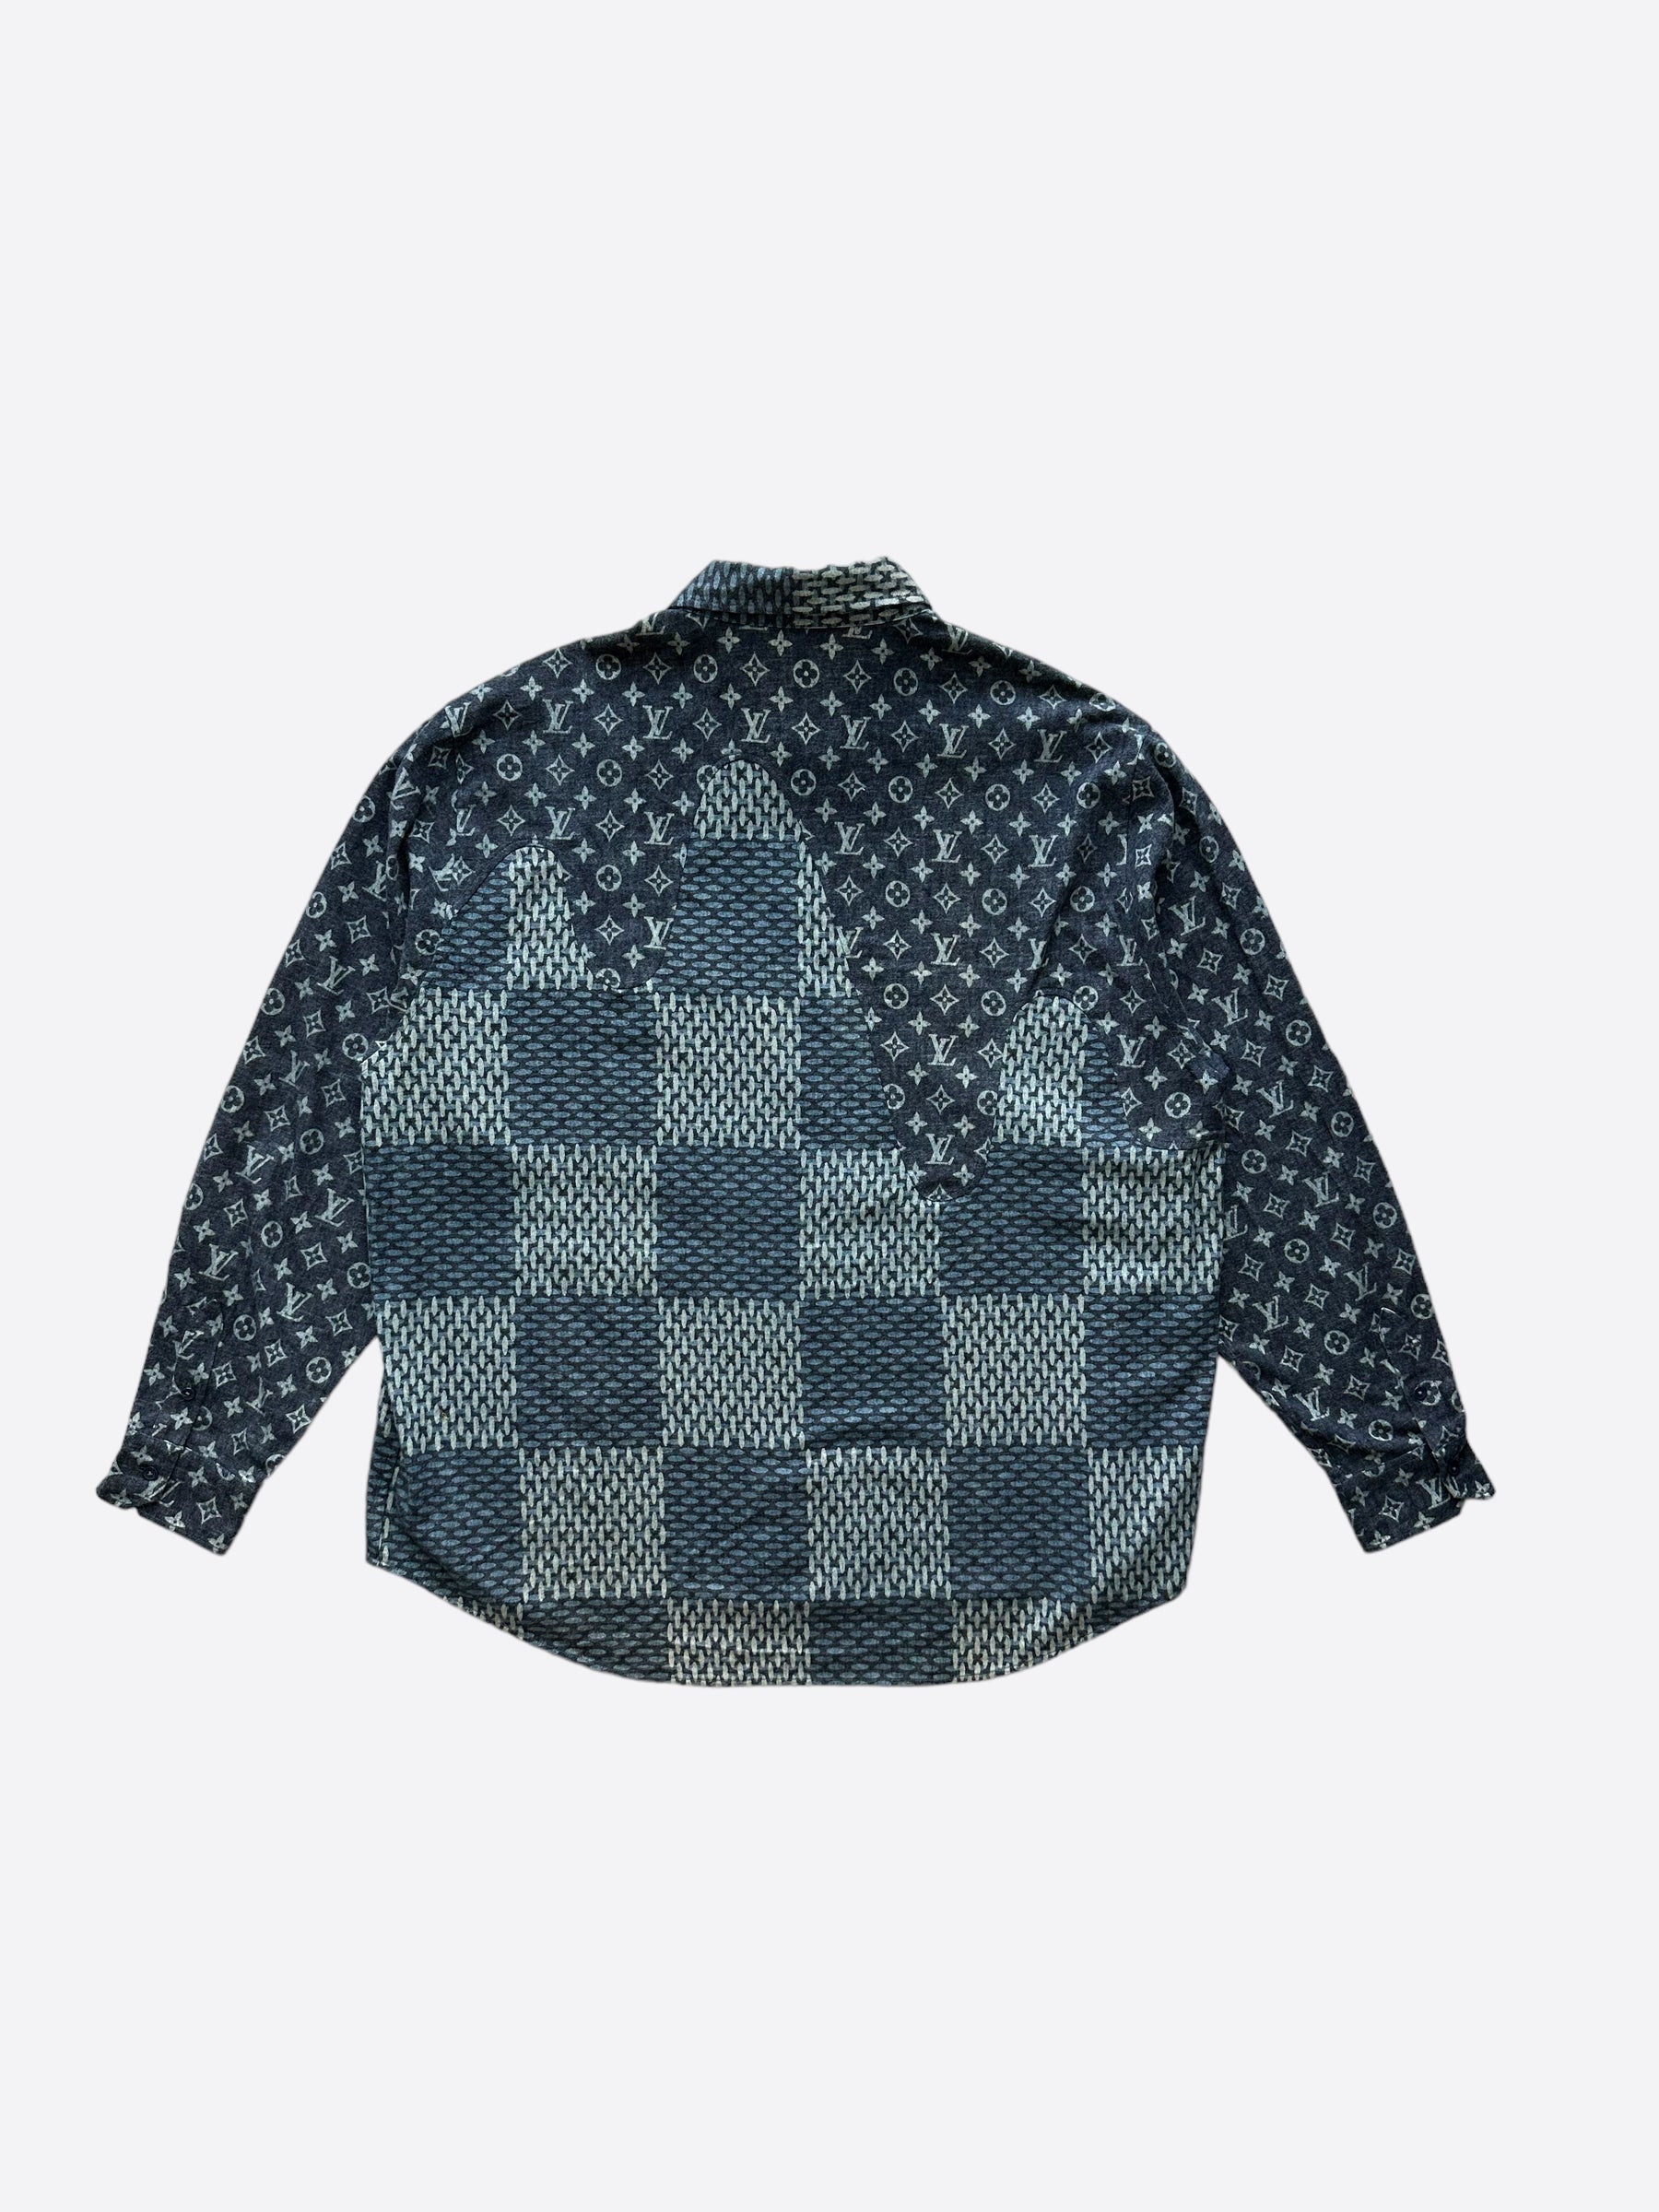 Louis Vuitton Giant Damier Monogram Waves Flannel Shirt VCCM07 Sz